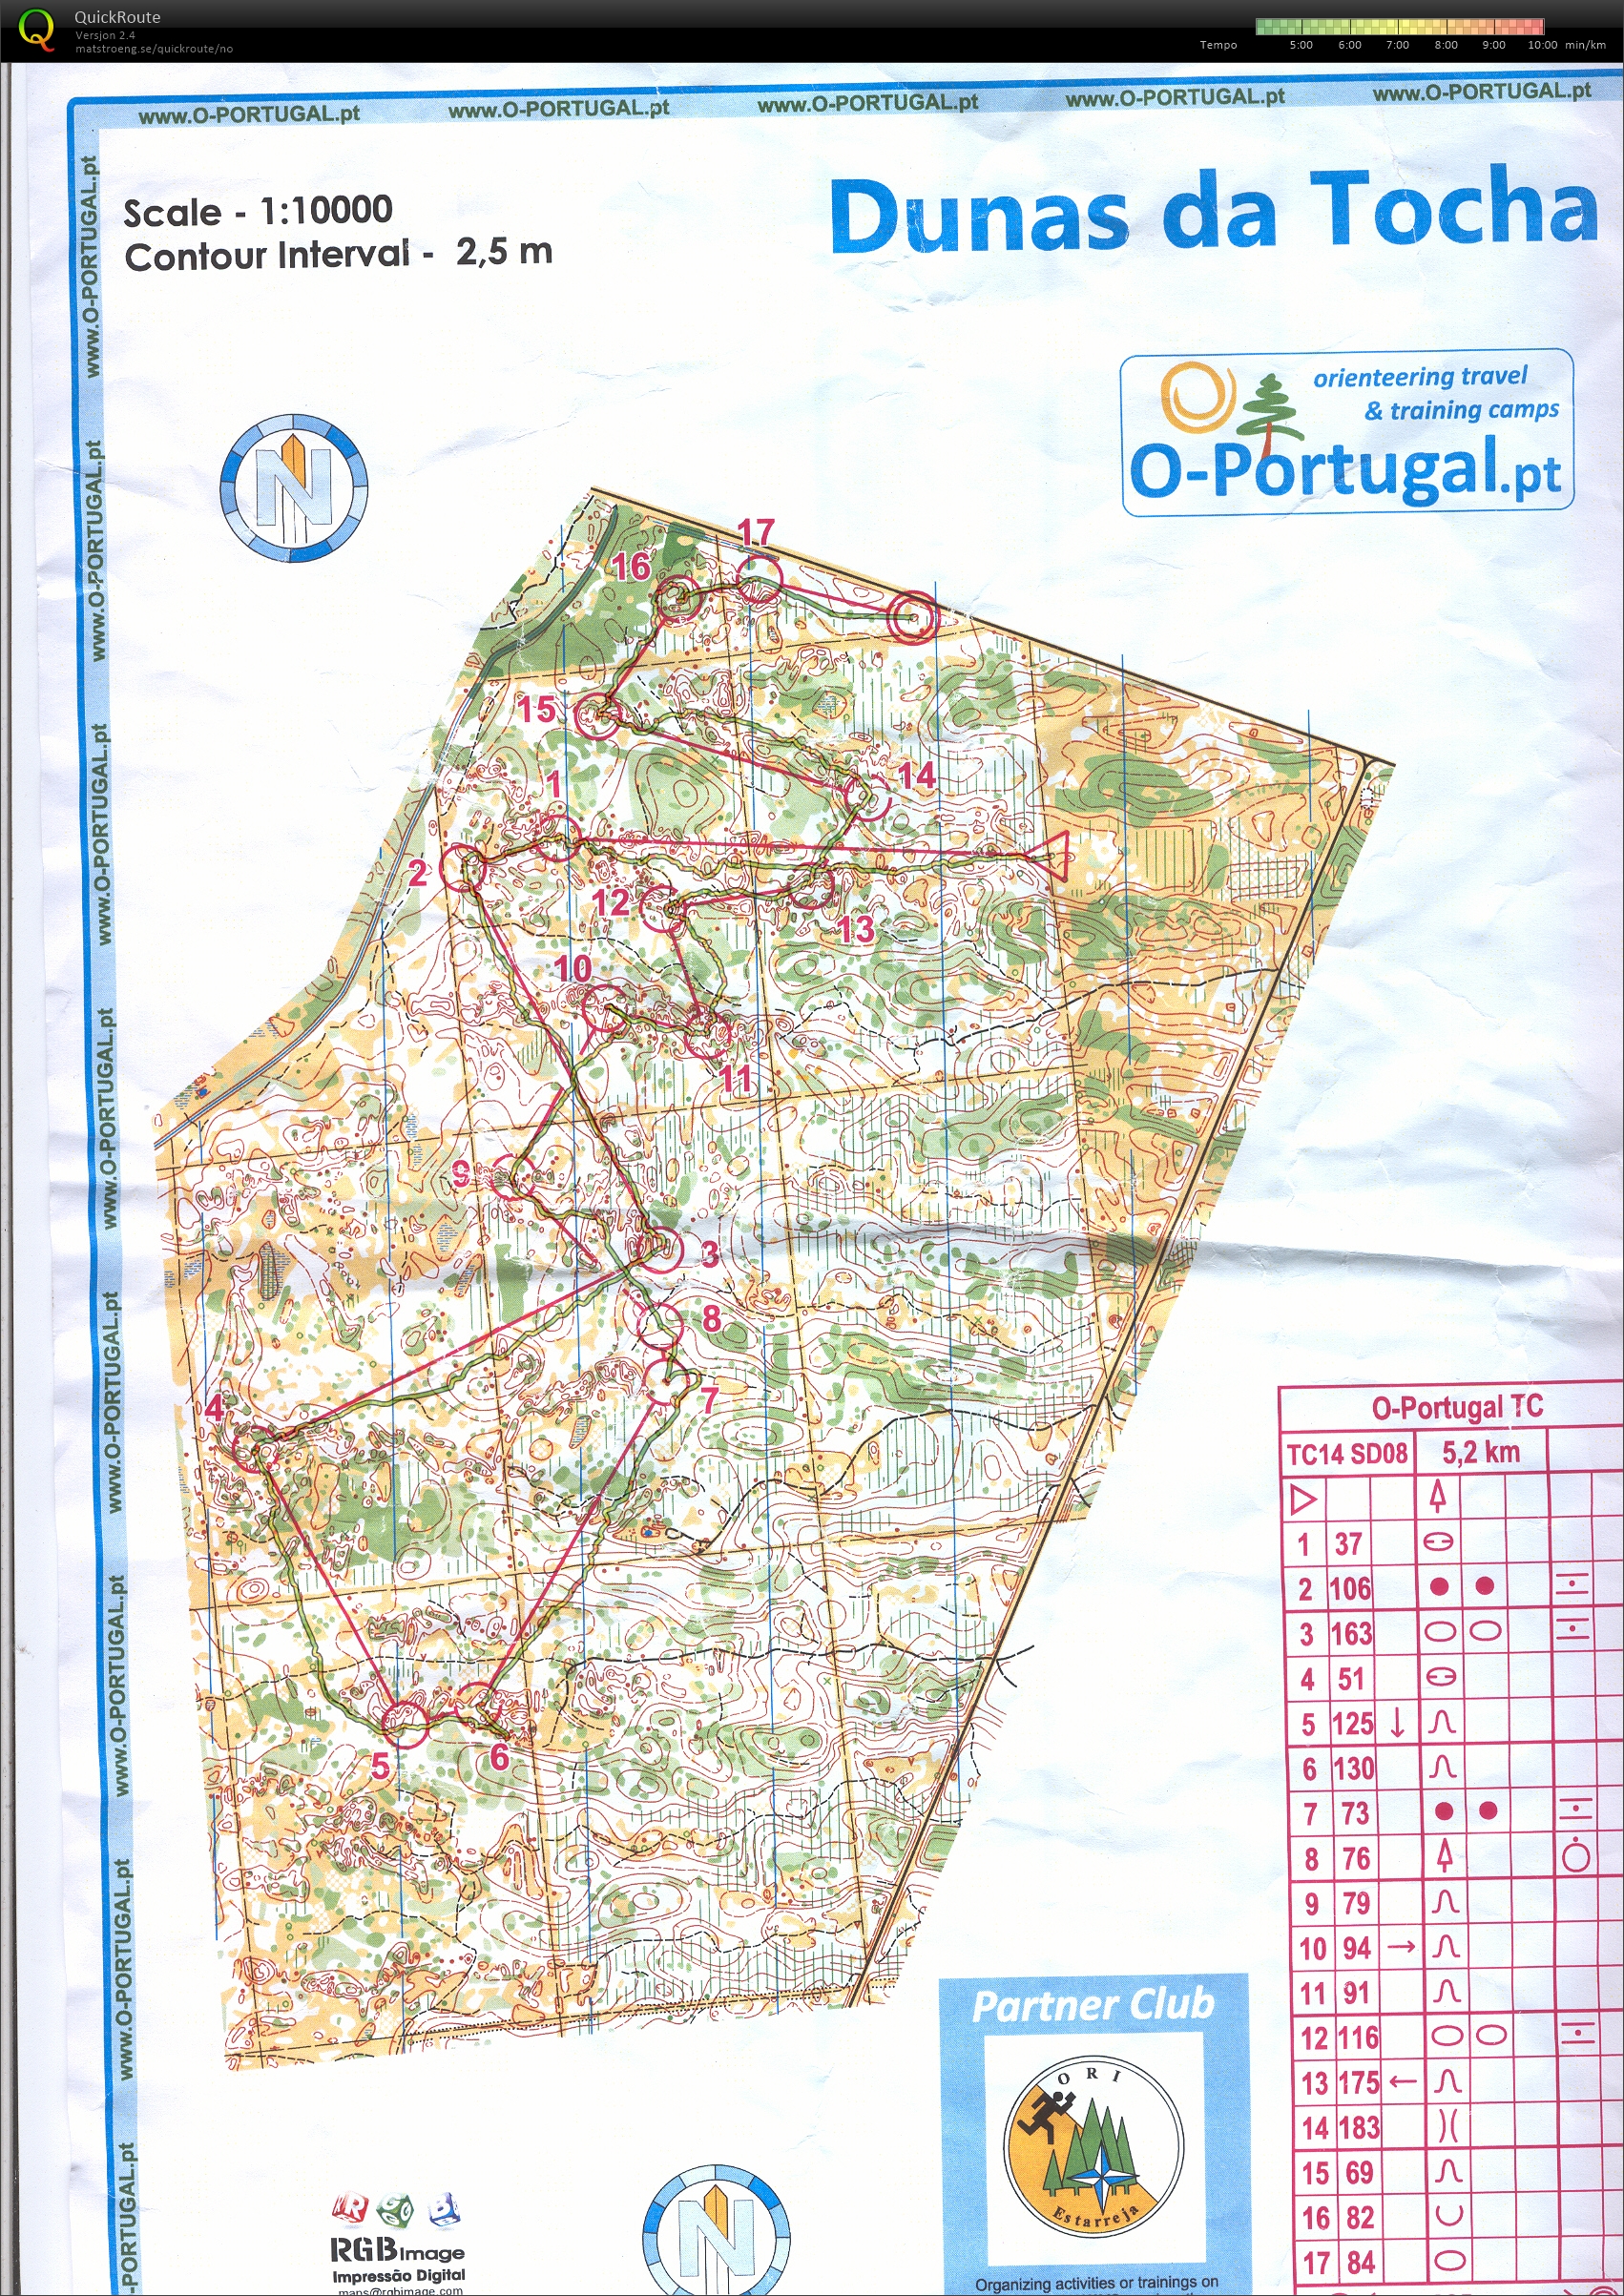 Portugal økt 6 (22/01/2014)